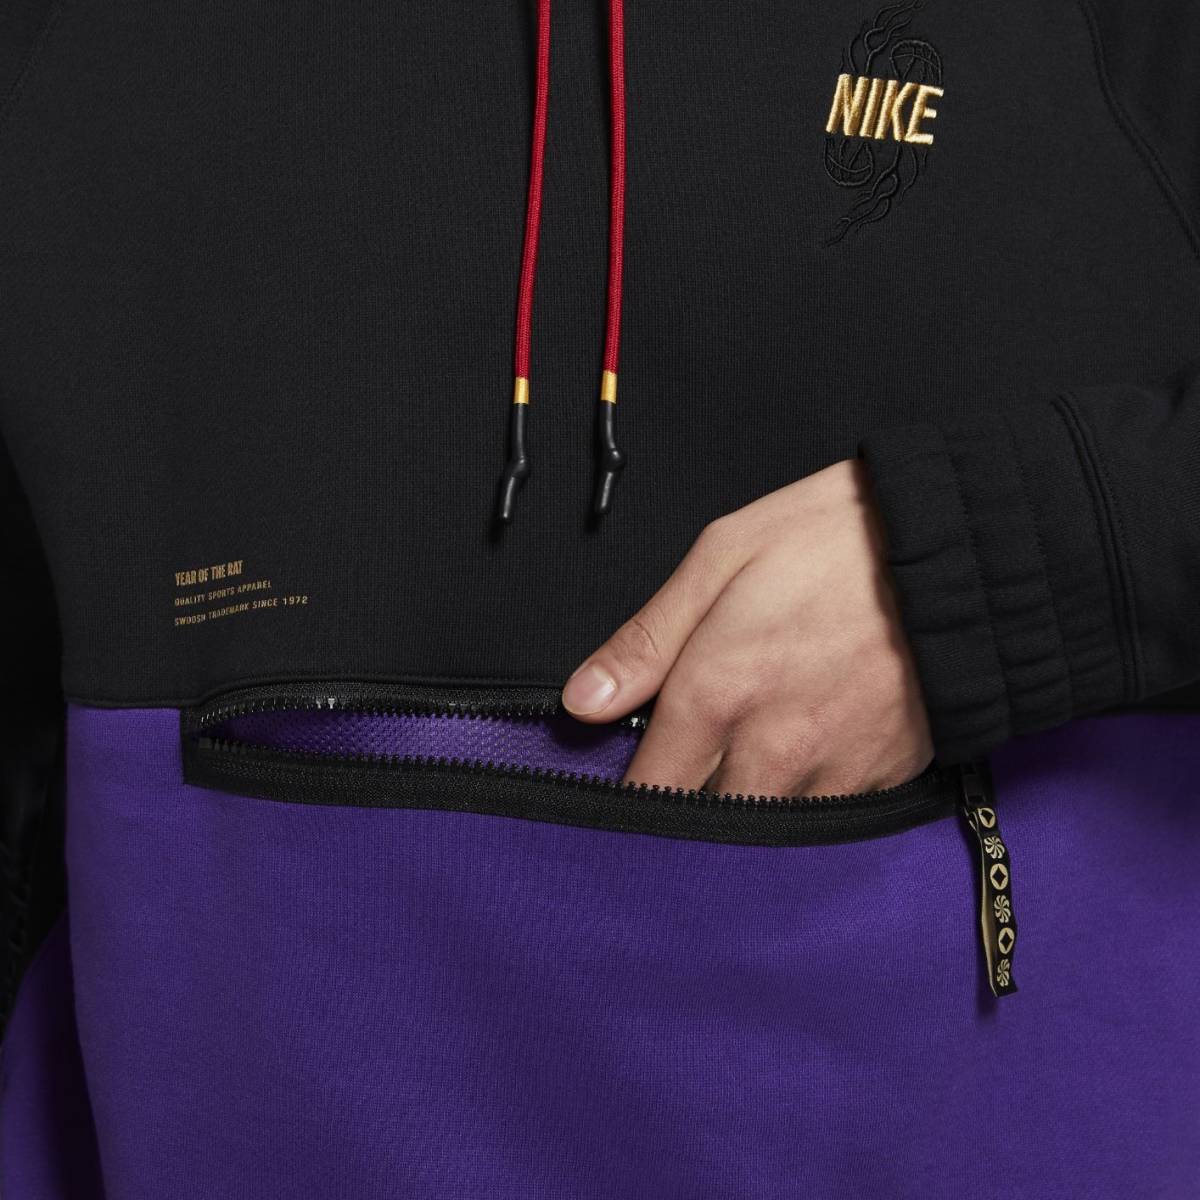  последний XL Nike Gold вышивка большой sushuf-ti трудно найти осмотр 13200 иен kai Lee флис тренировочный тянуть over Parker чёрный / золотой 